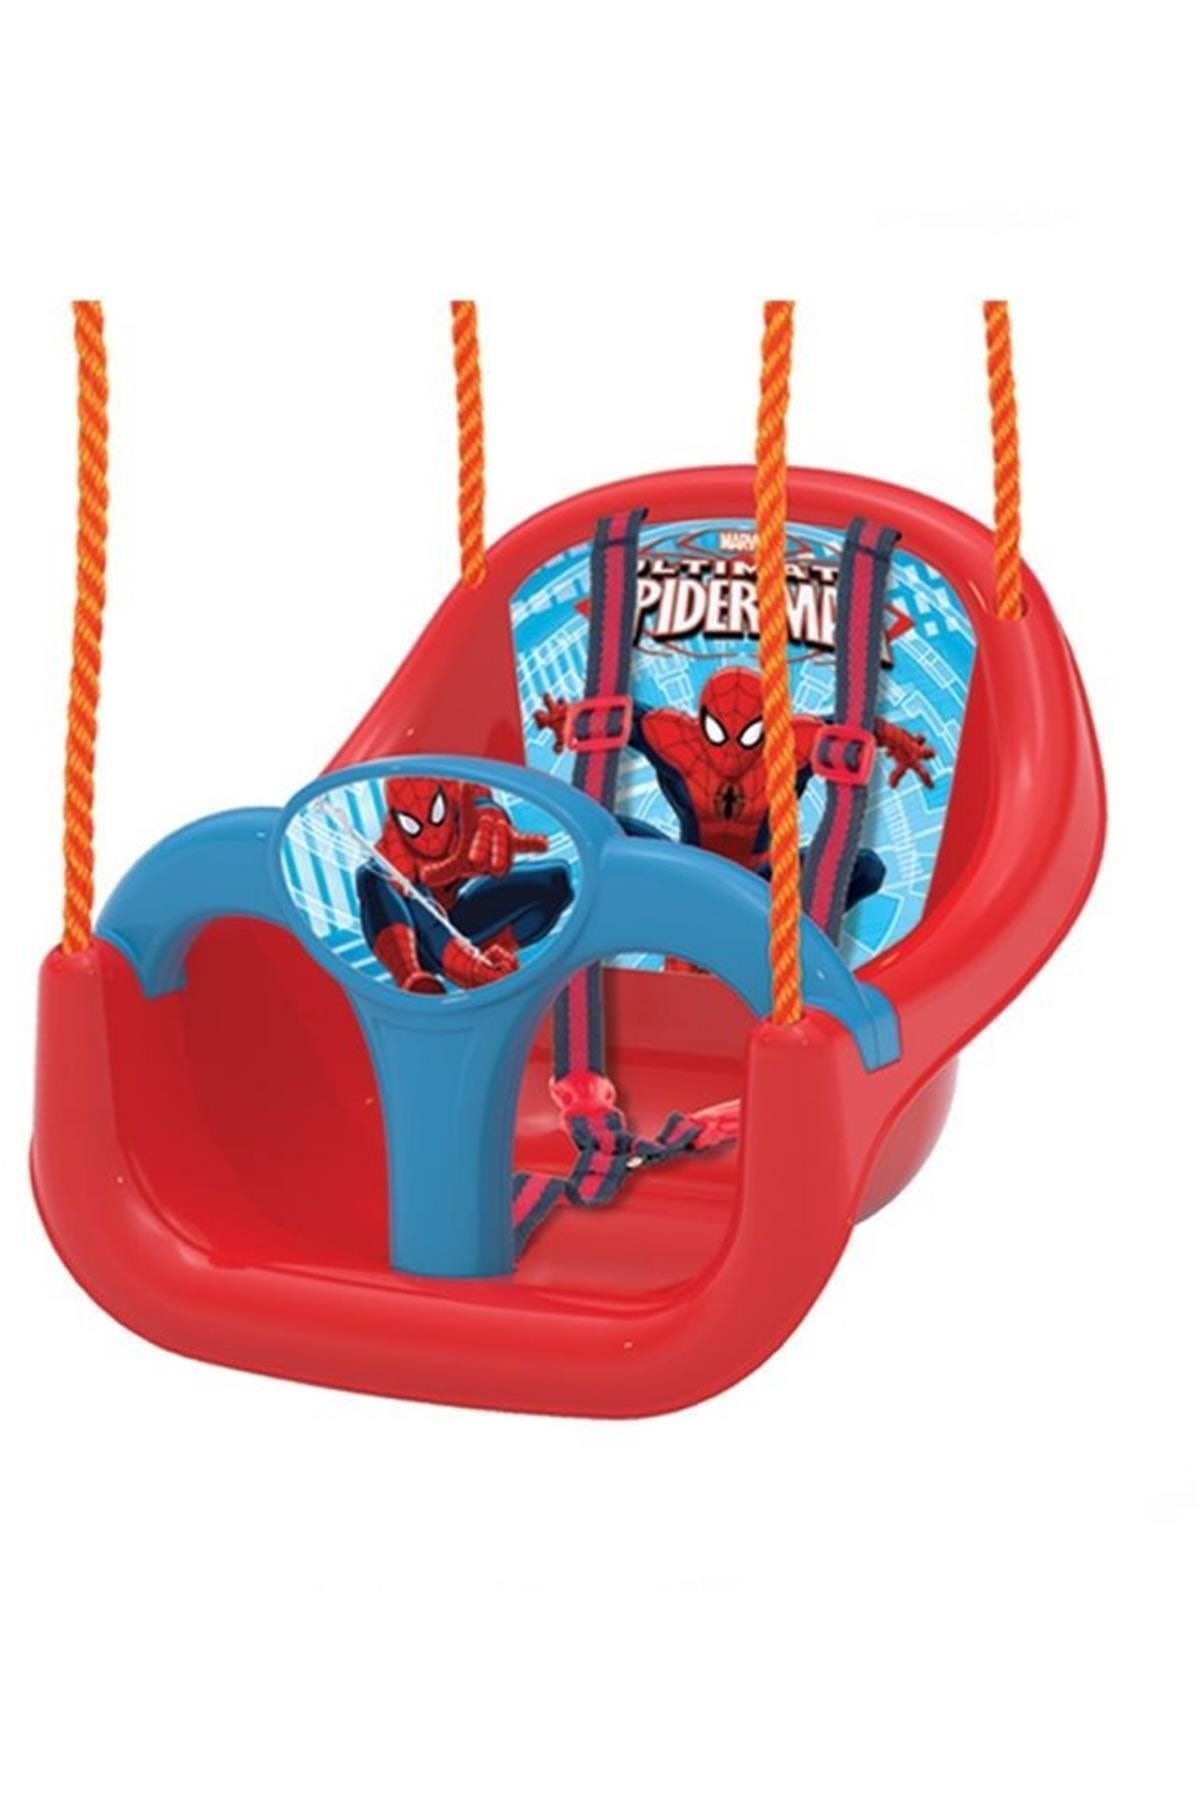 DEDE Marka Spiderman Salıncak Ölçü: Standart Adet: 1 Marka: Kategori: Çocuk Salıncak